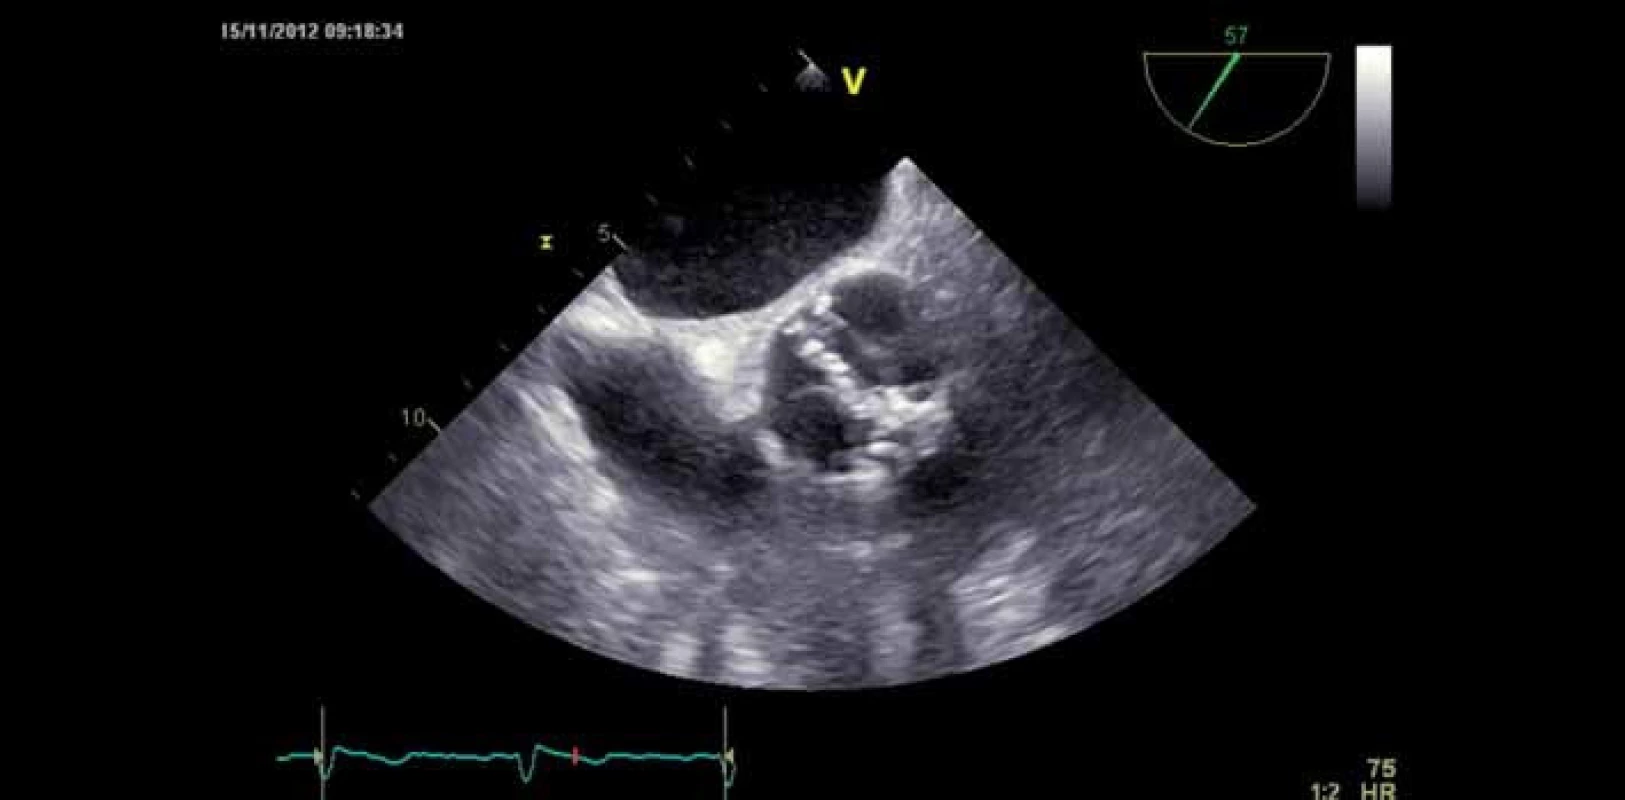 Bikuspidální stenotická aortální chlopeň – jícnová echokardiografie.